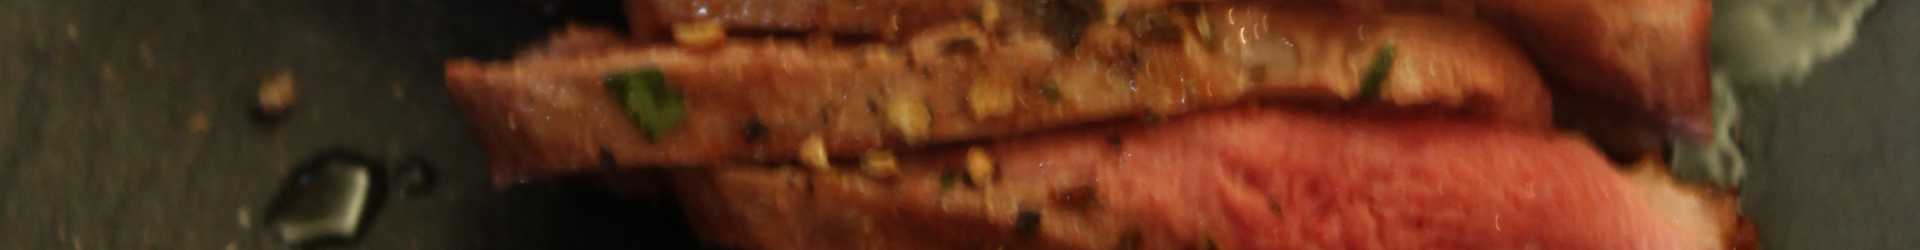 Magret de canard aux épices, écrasé de pommes de terre au romarin et poudre de châtaignes